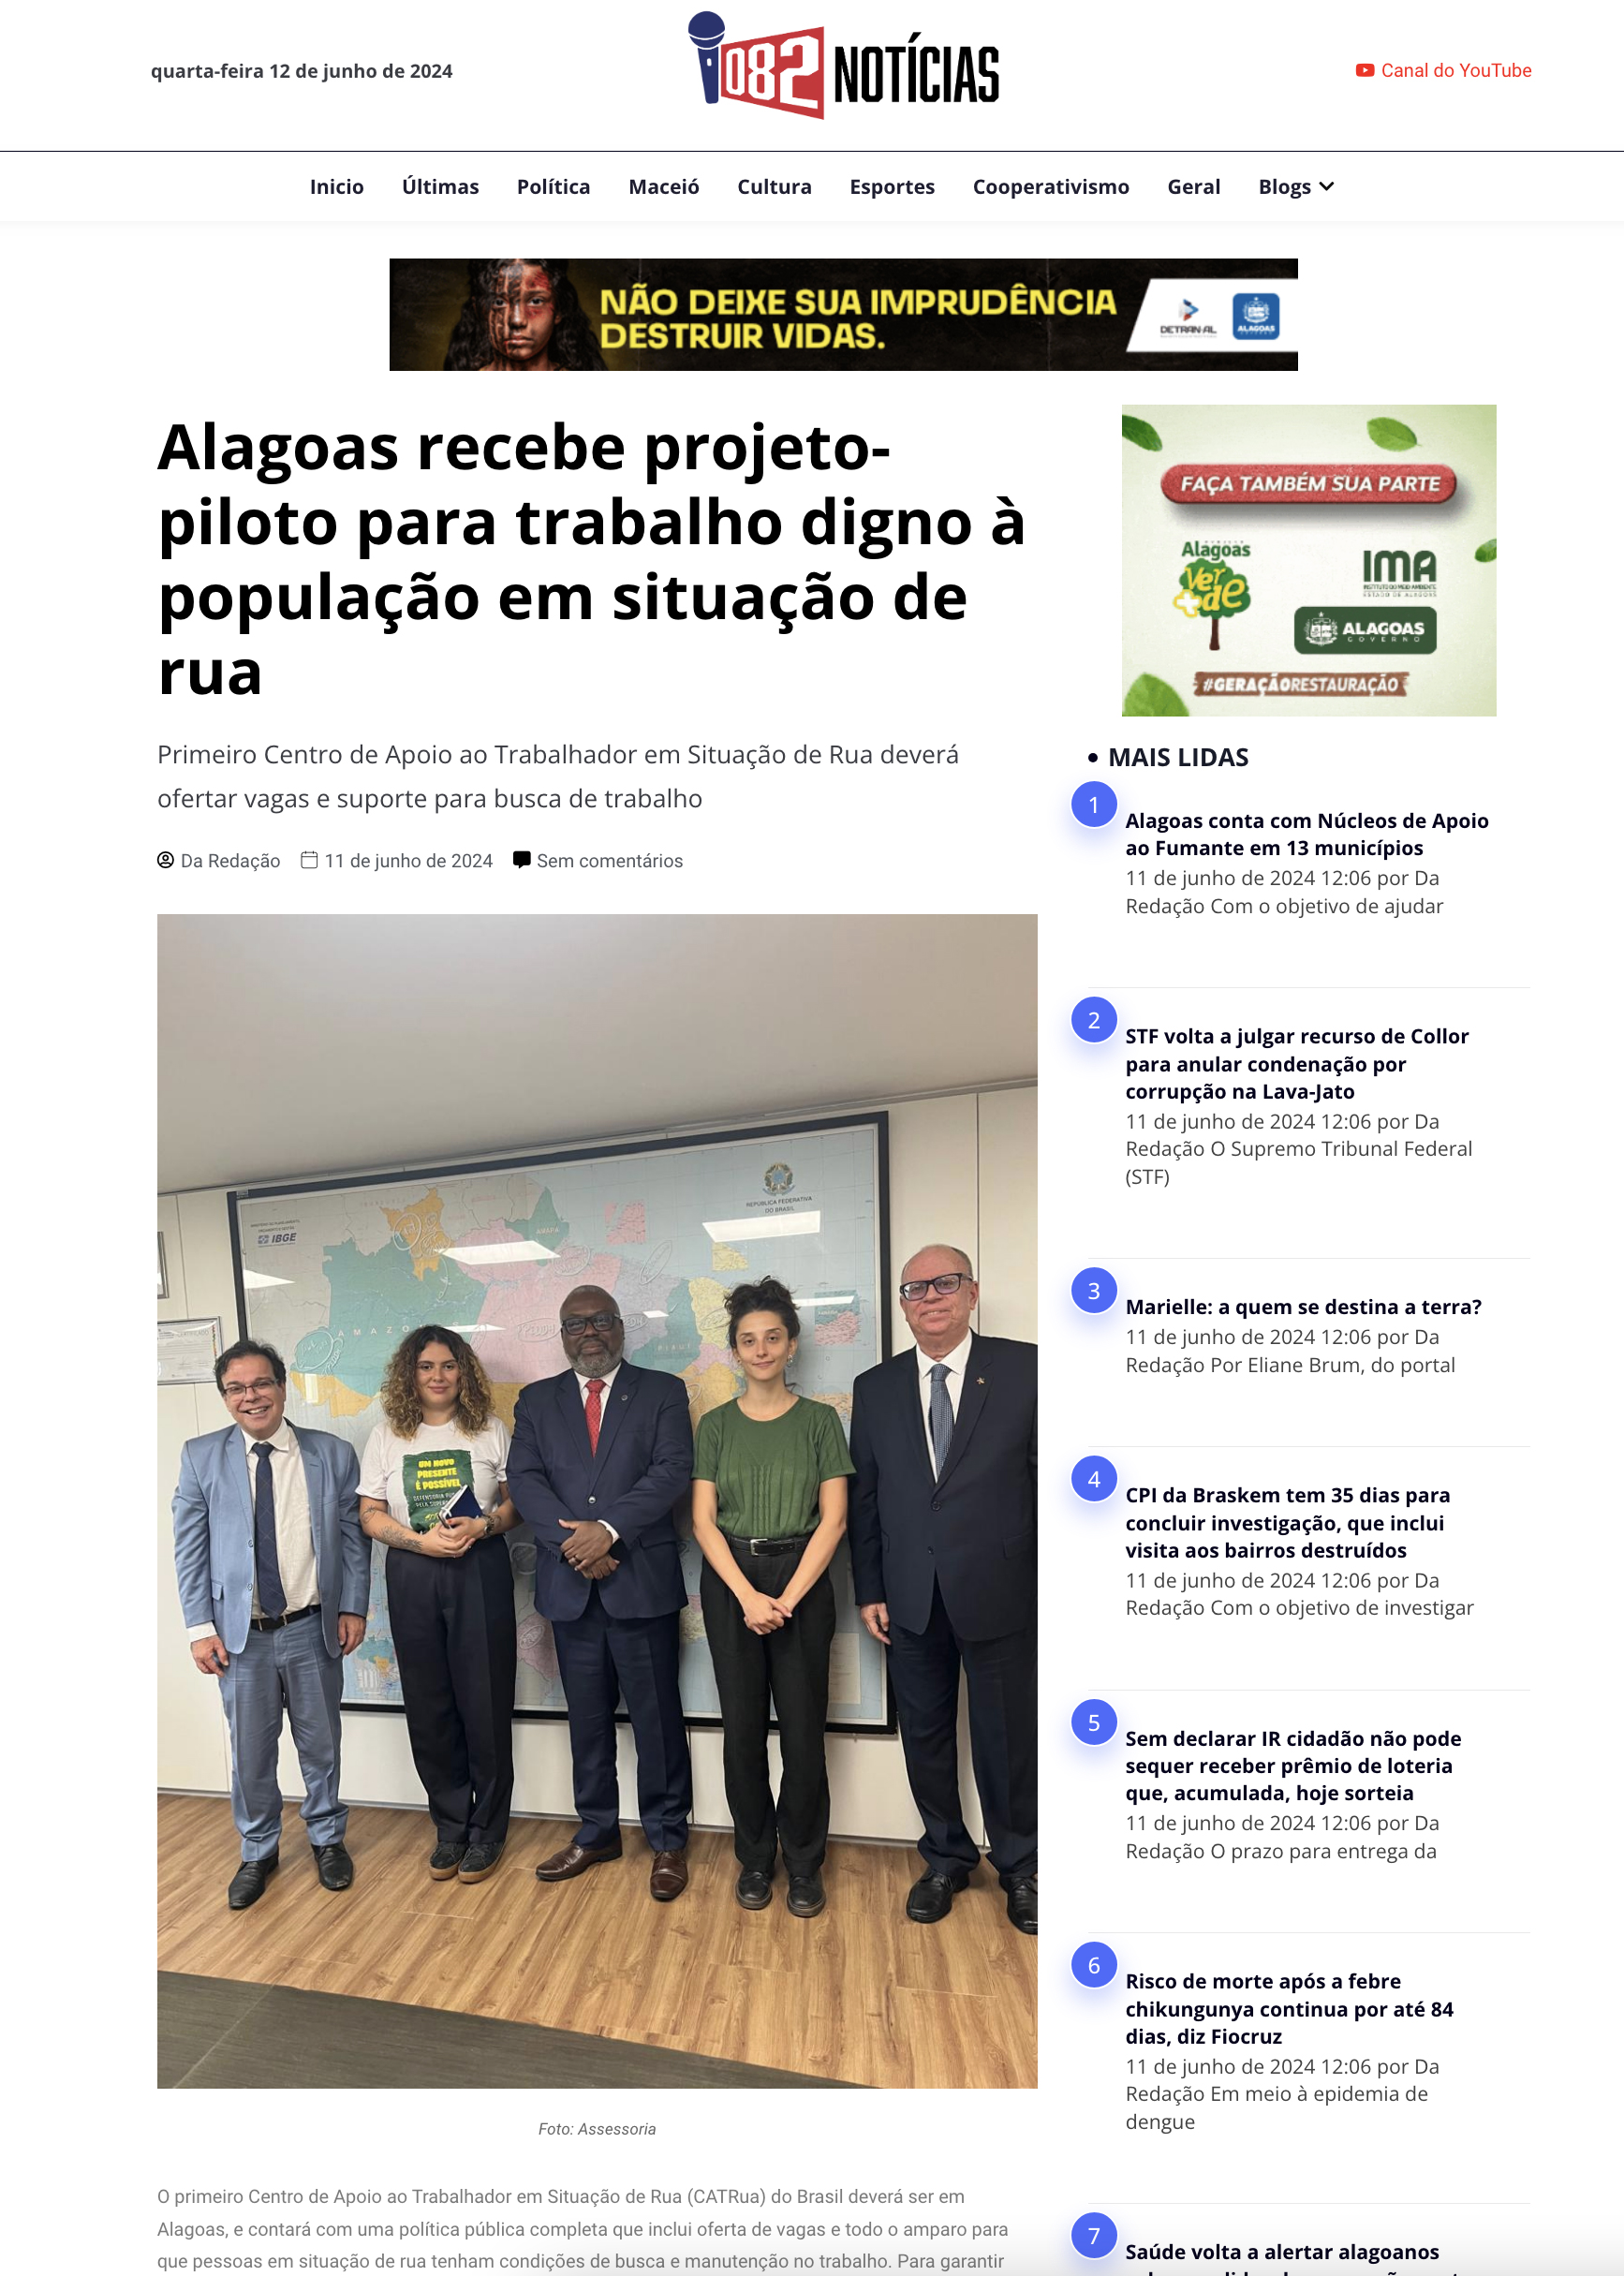 Alagoas recebe projeto-piloto para trabalho digno à população em situação de rua